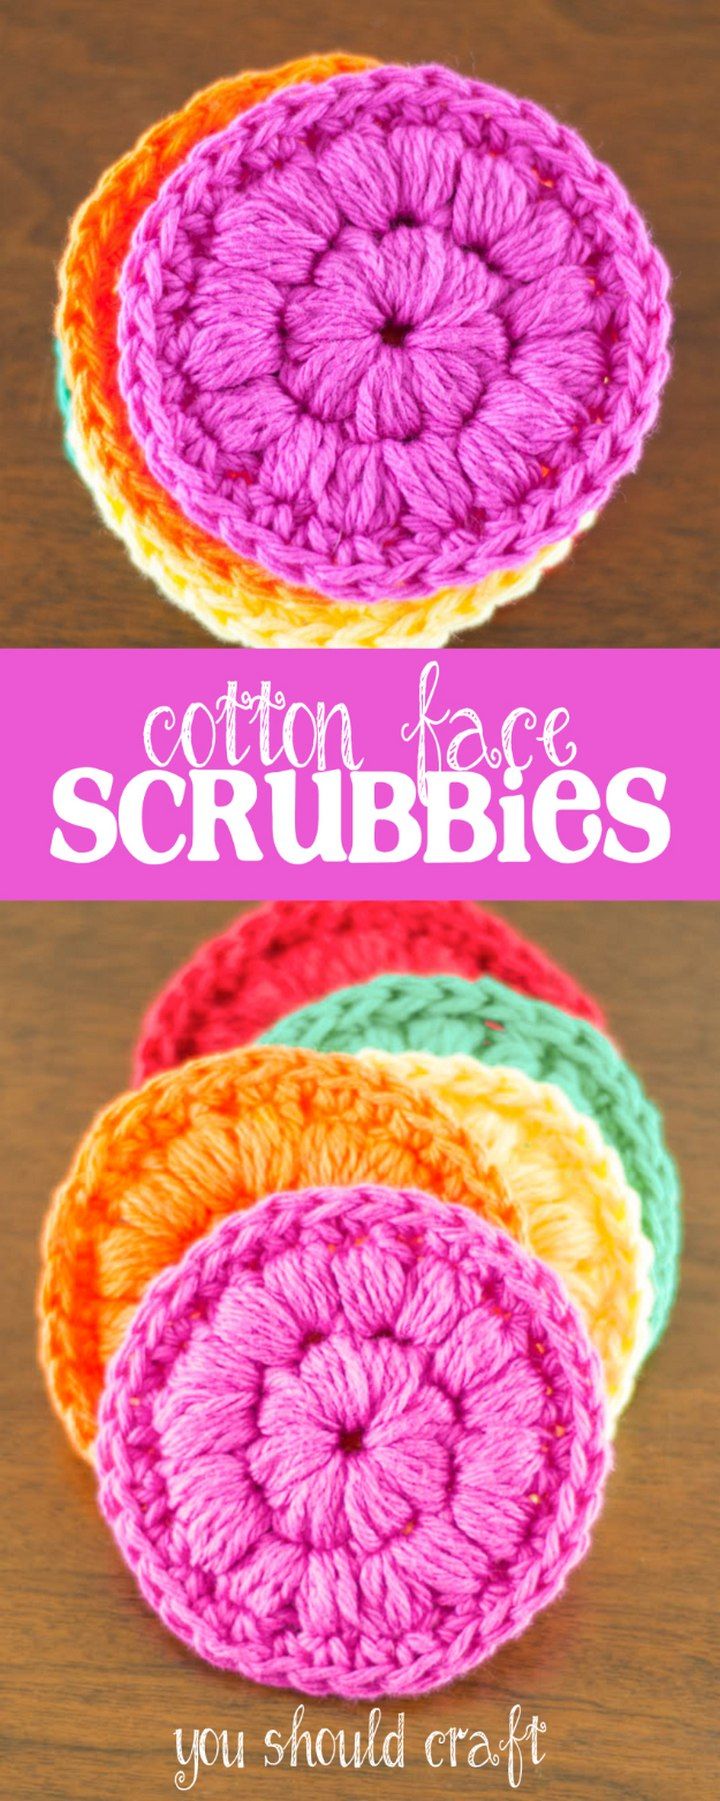 Cotton Face Scrubbies